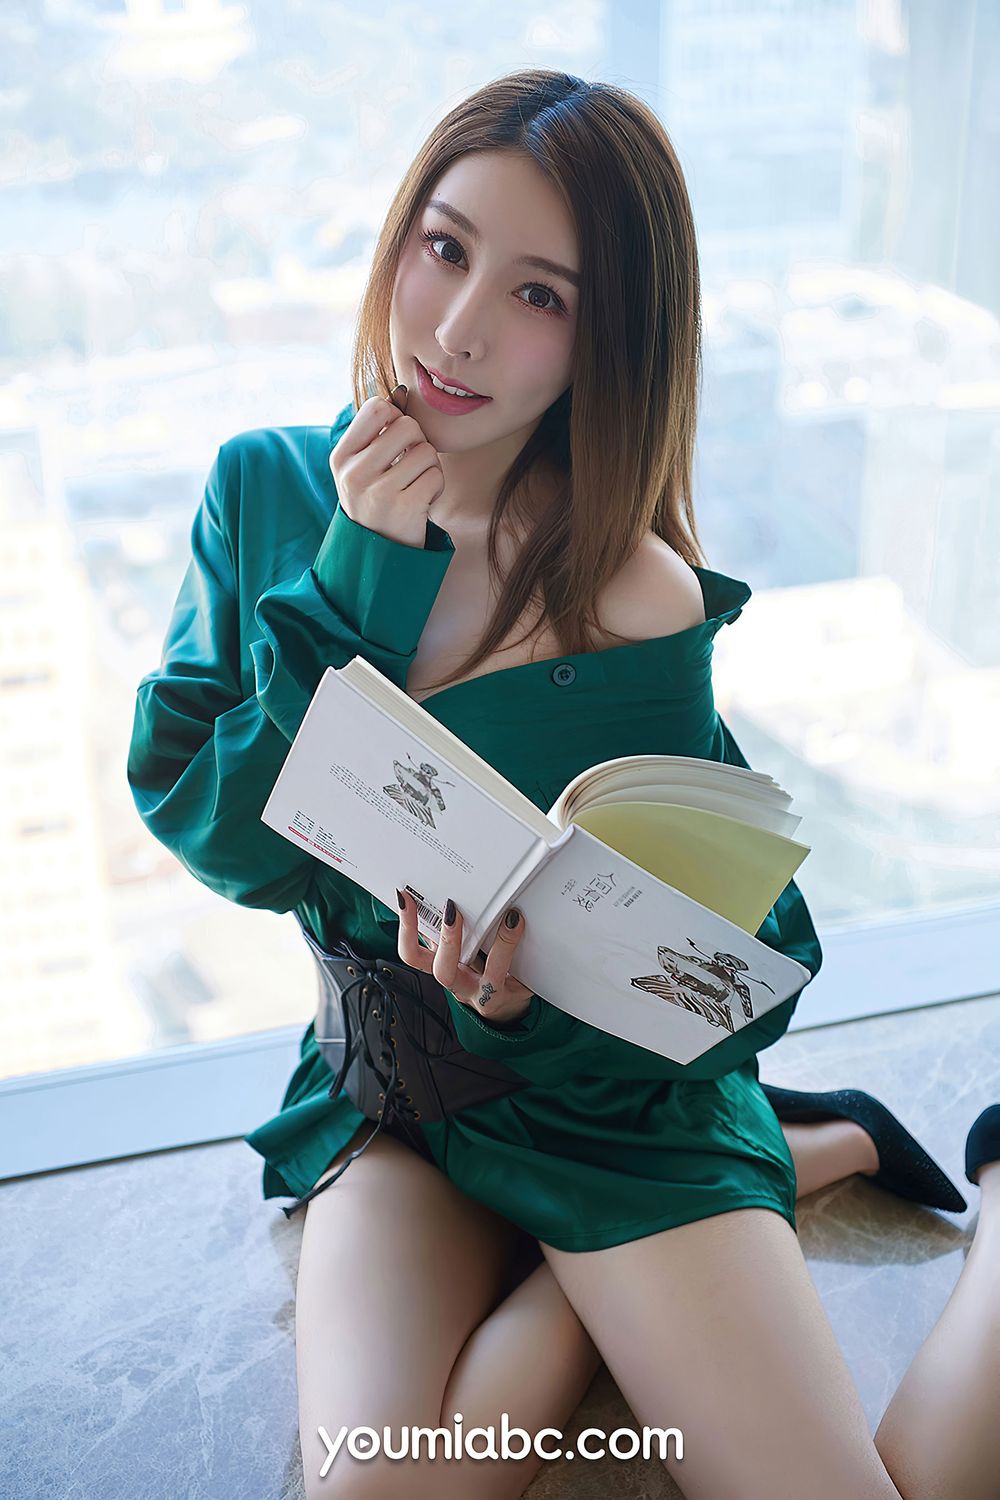 美女模特然熙 - 绿色服饰开春之约主题性感写真